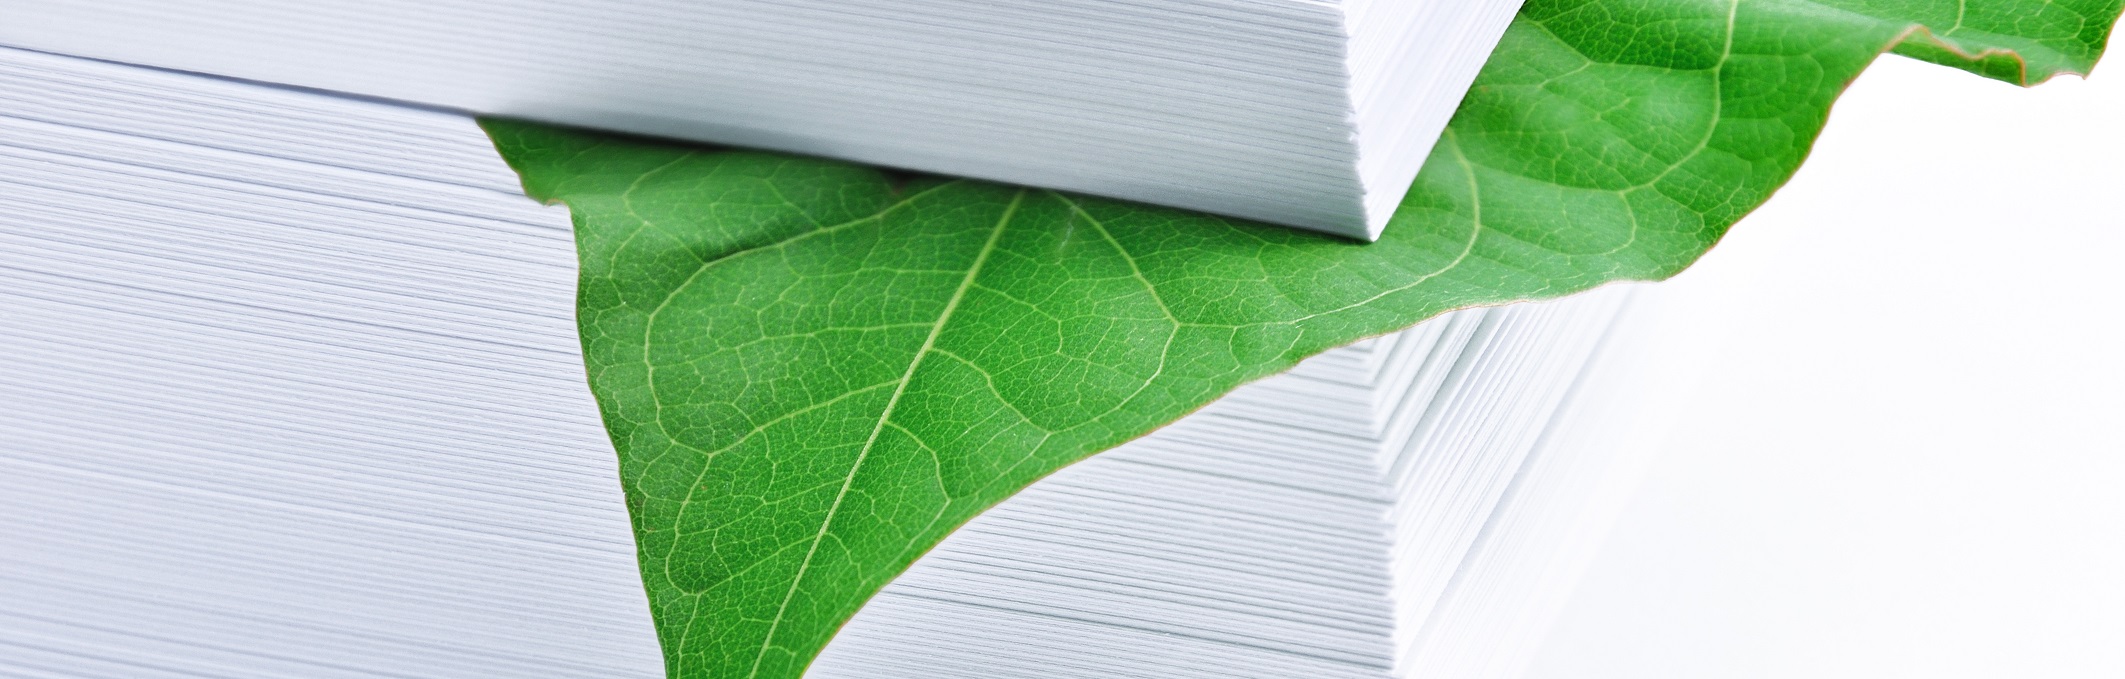 Papier und deren Nachhaltigkeit